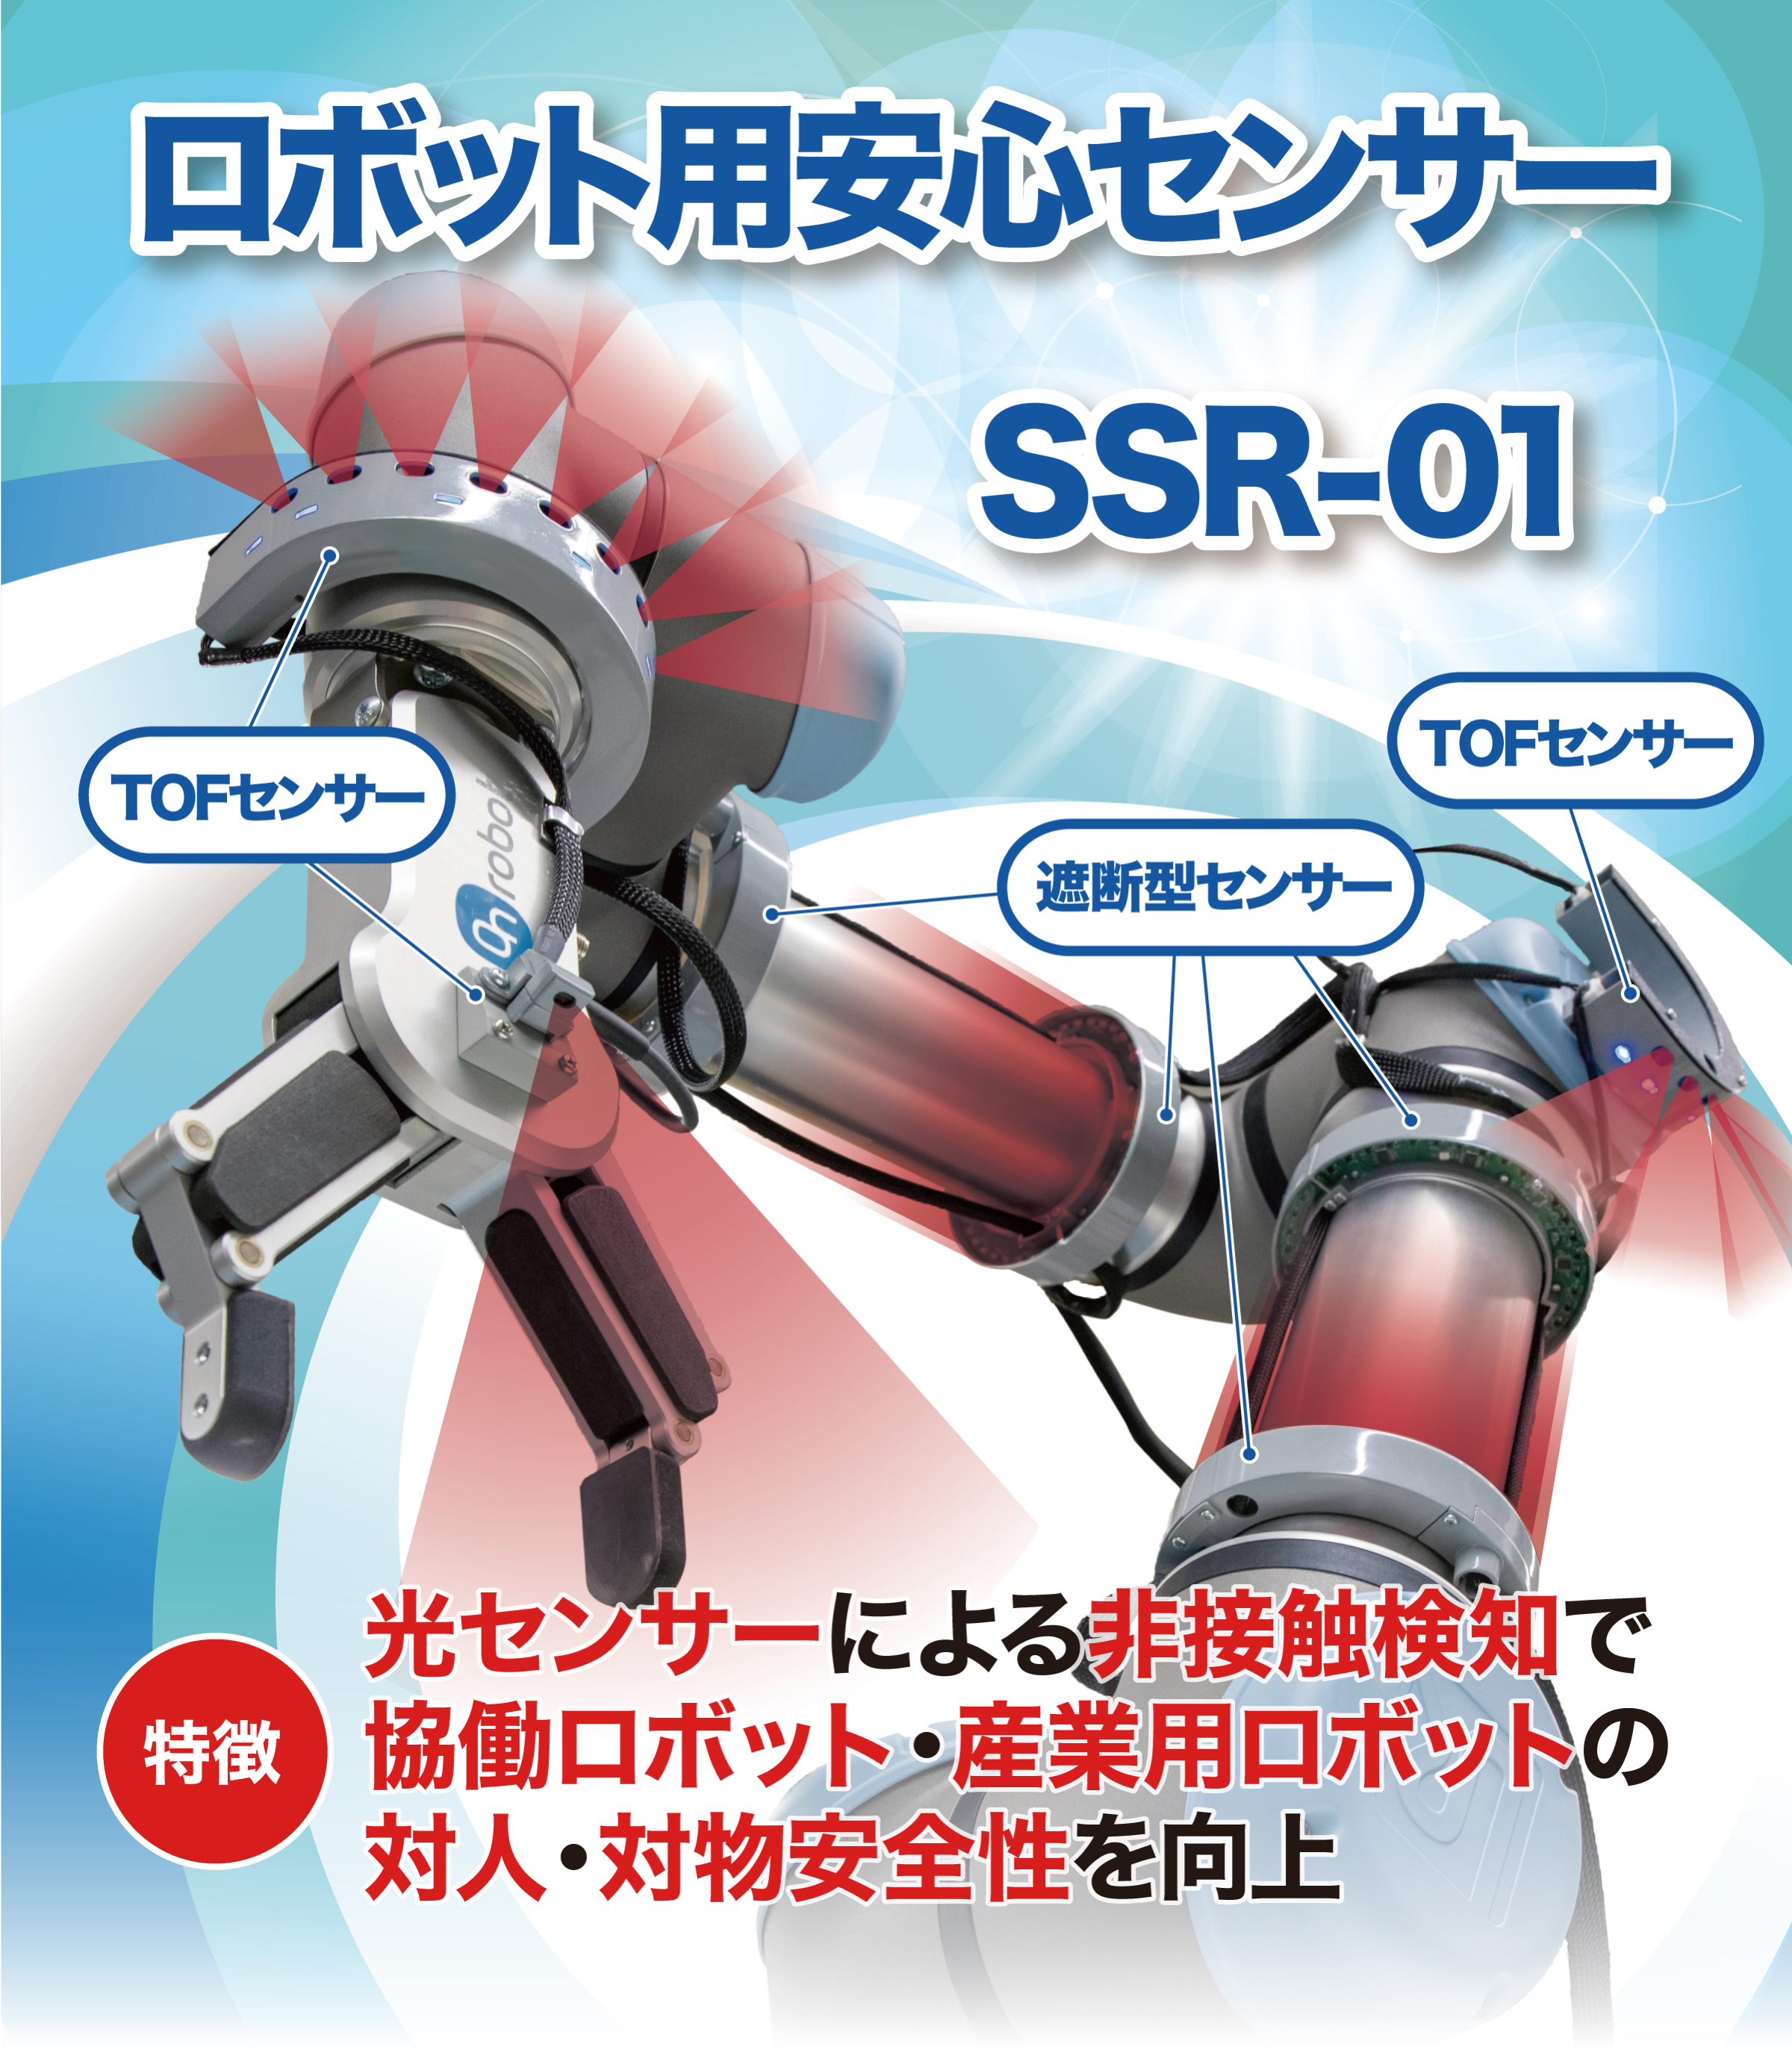 ロボット用安心センサーSSR-01